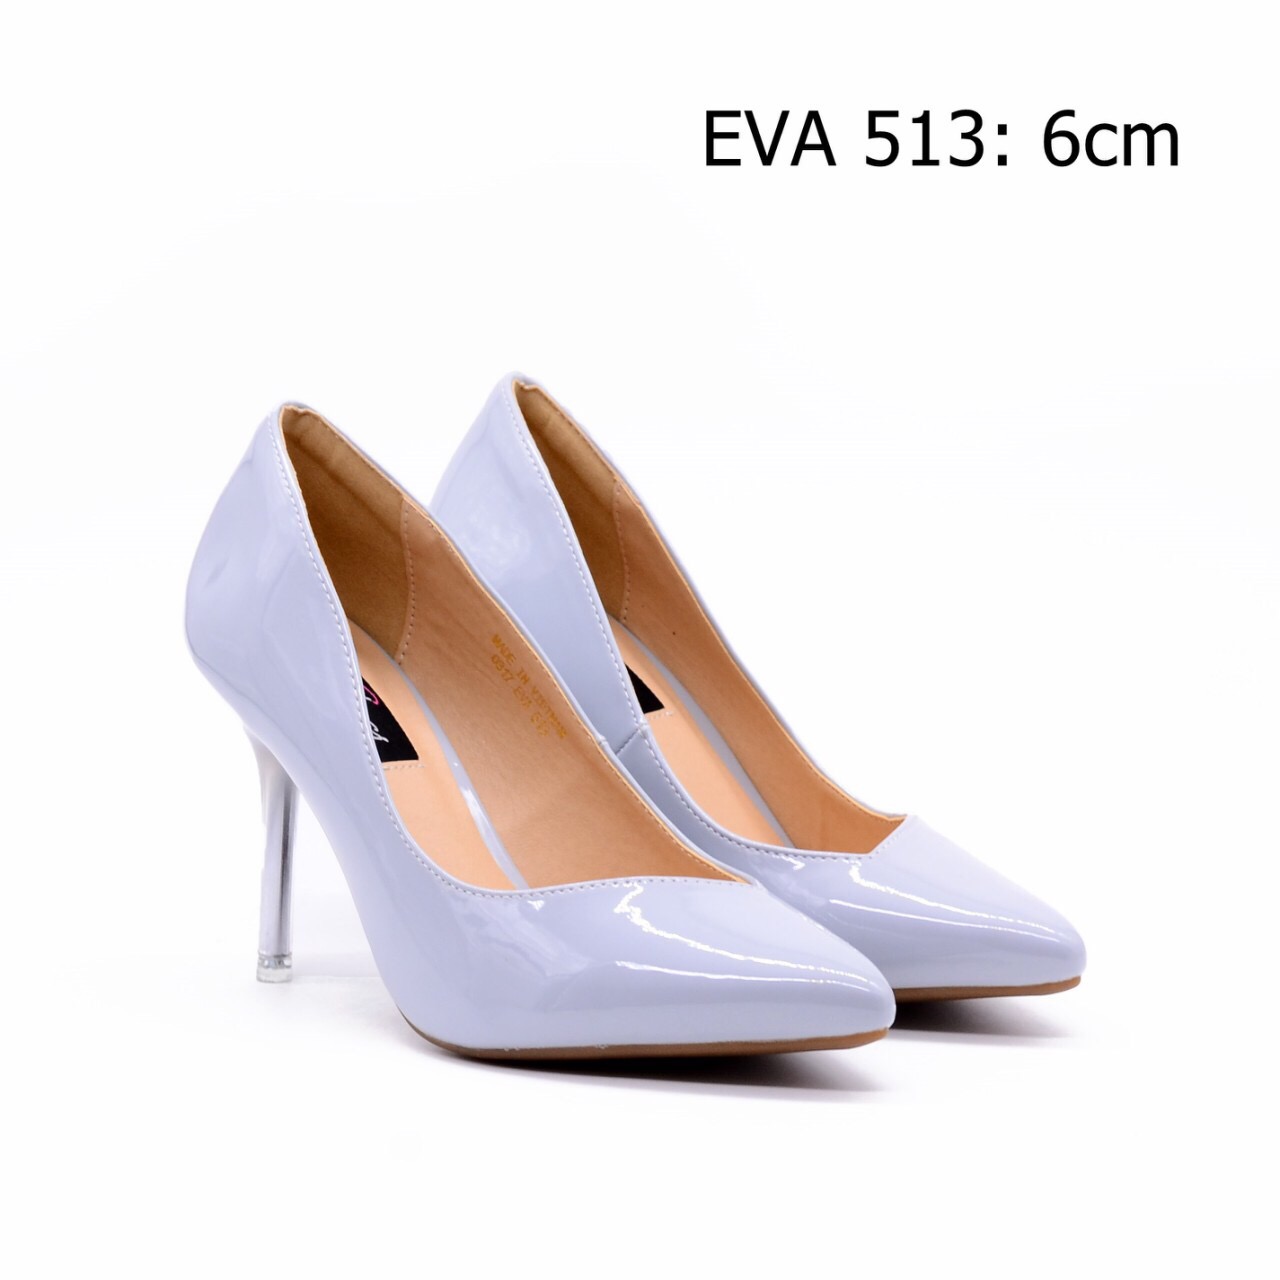 Giày mũi nhọn da bóng cá tính EVA513 thiết kế gót đũa tôn dáng, thanh thoát.